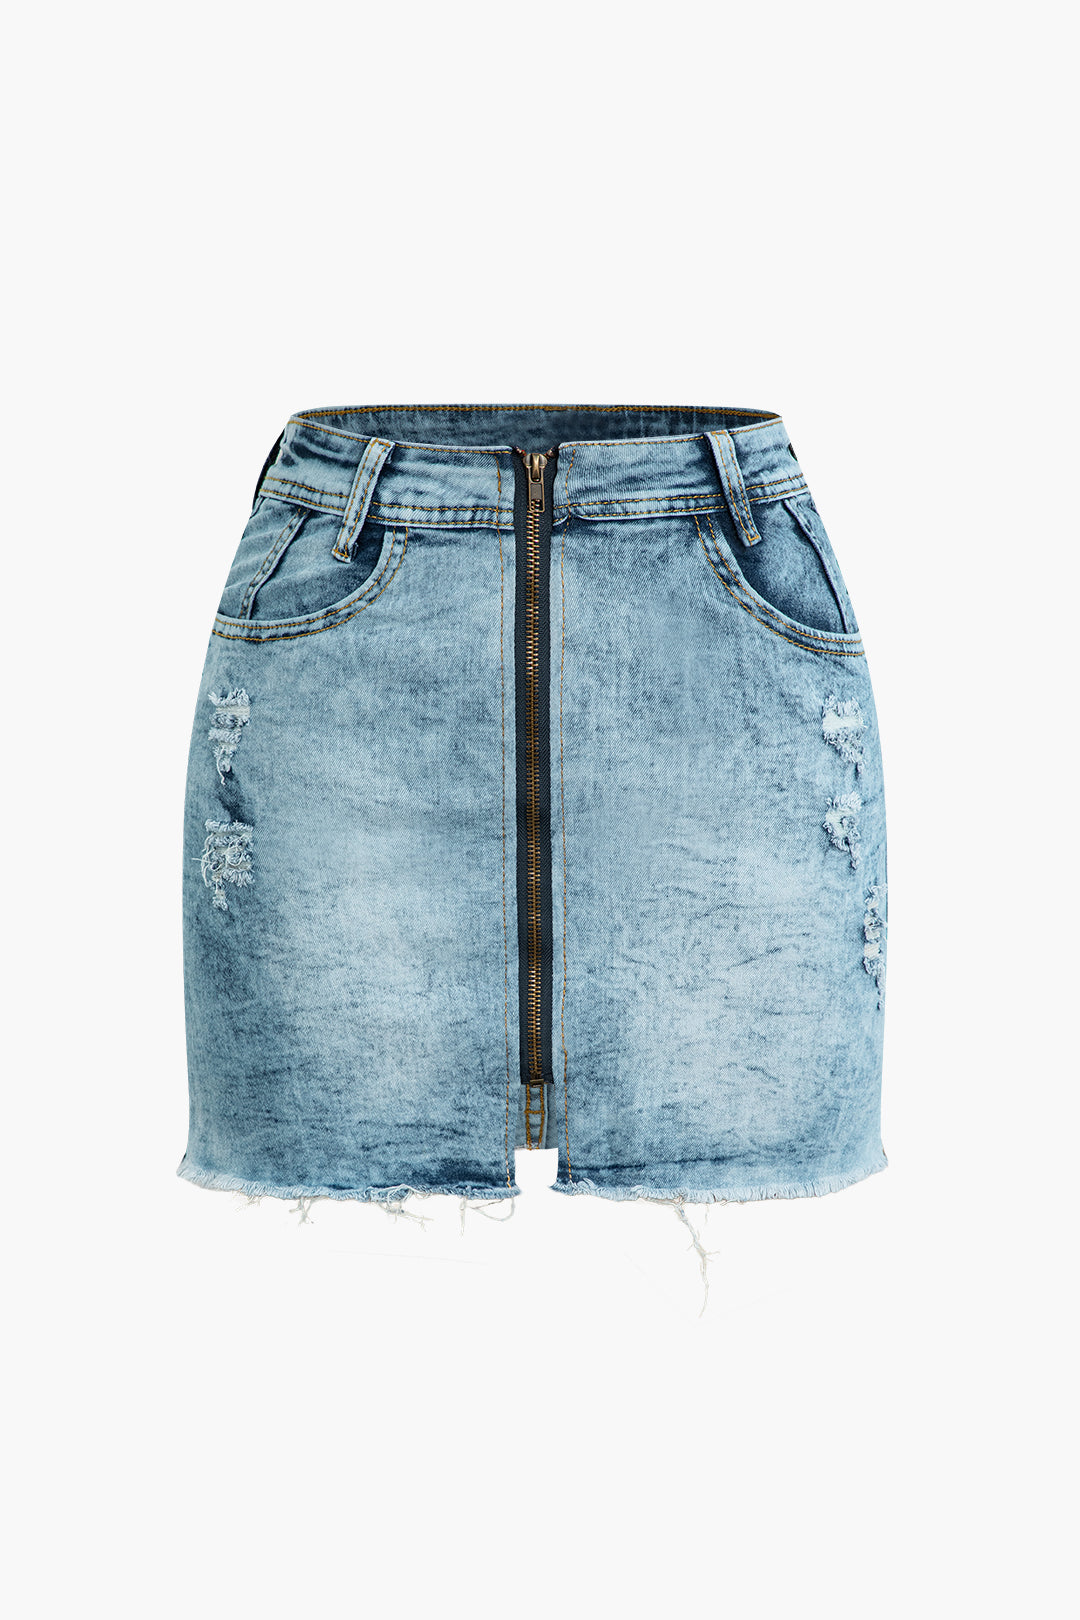 Zipper Pocket Frayed Denim Skirt